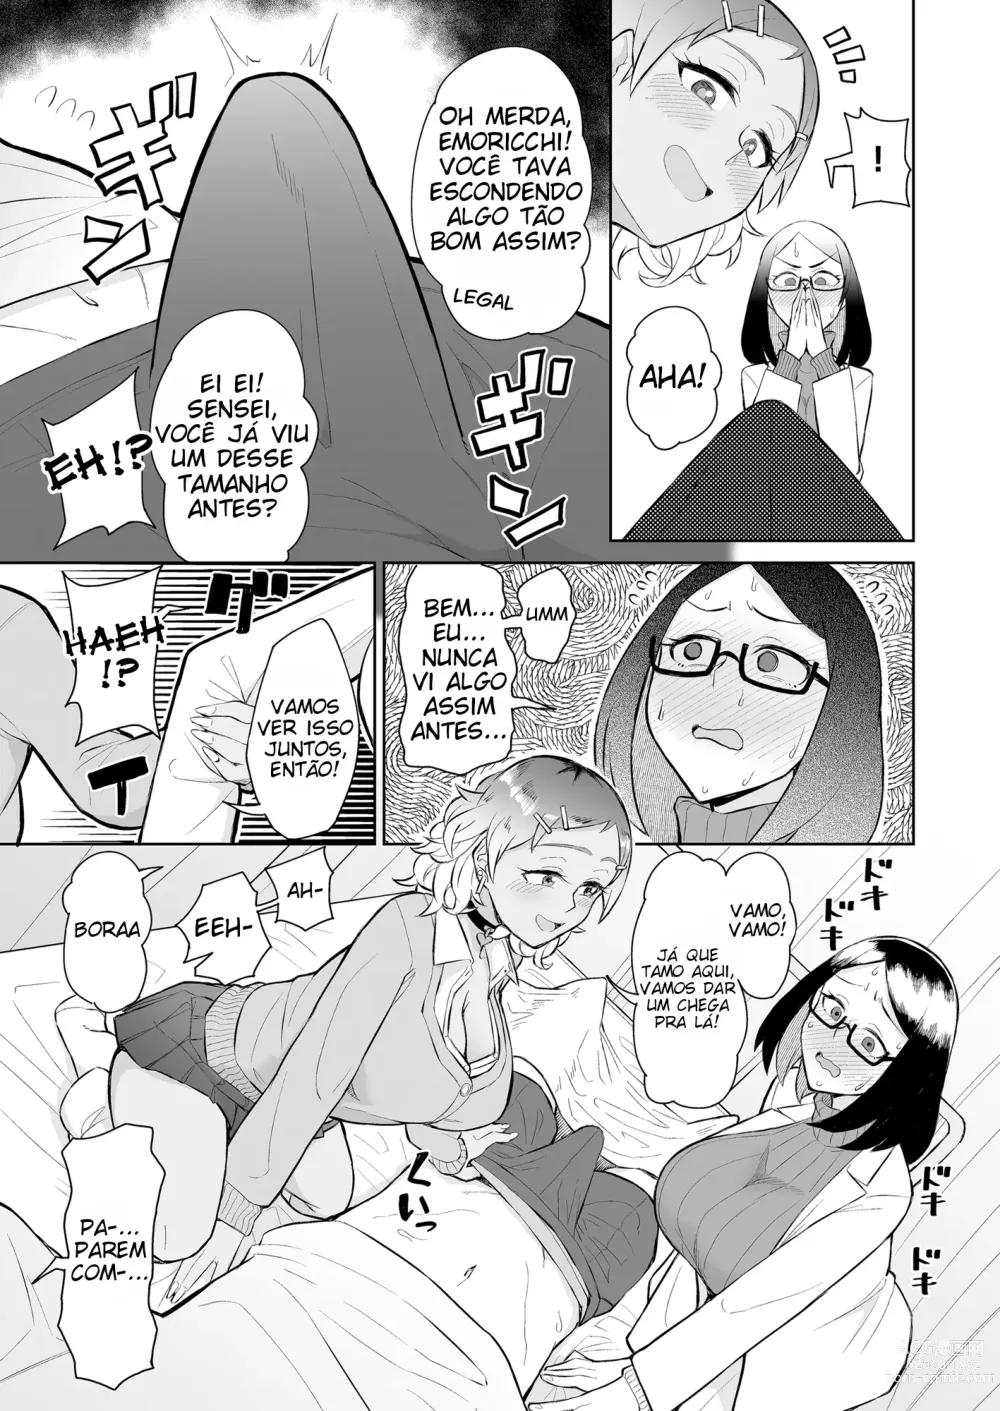 Page 6 of doujinshi Sendo espremido na enfermaria por uma gyaru e uma enfermeira virgem